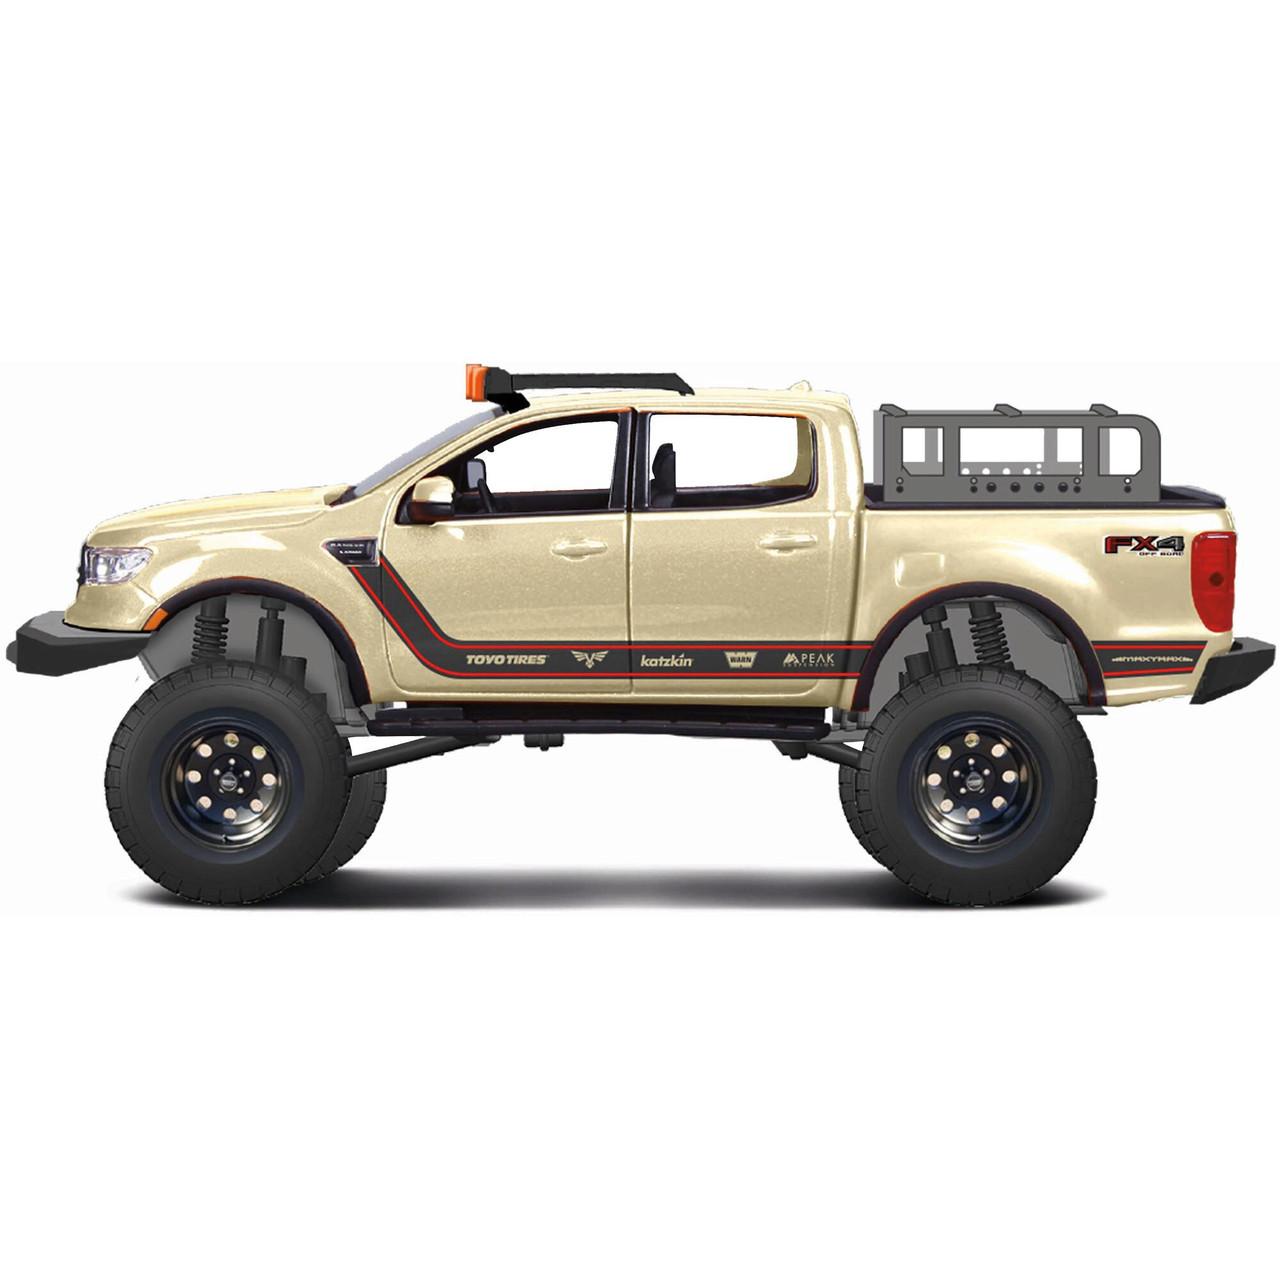 MAISTO Metalni model autića 1:24 2019 Ford Off-Road Ranger 32540 bež